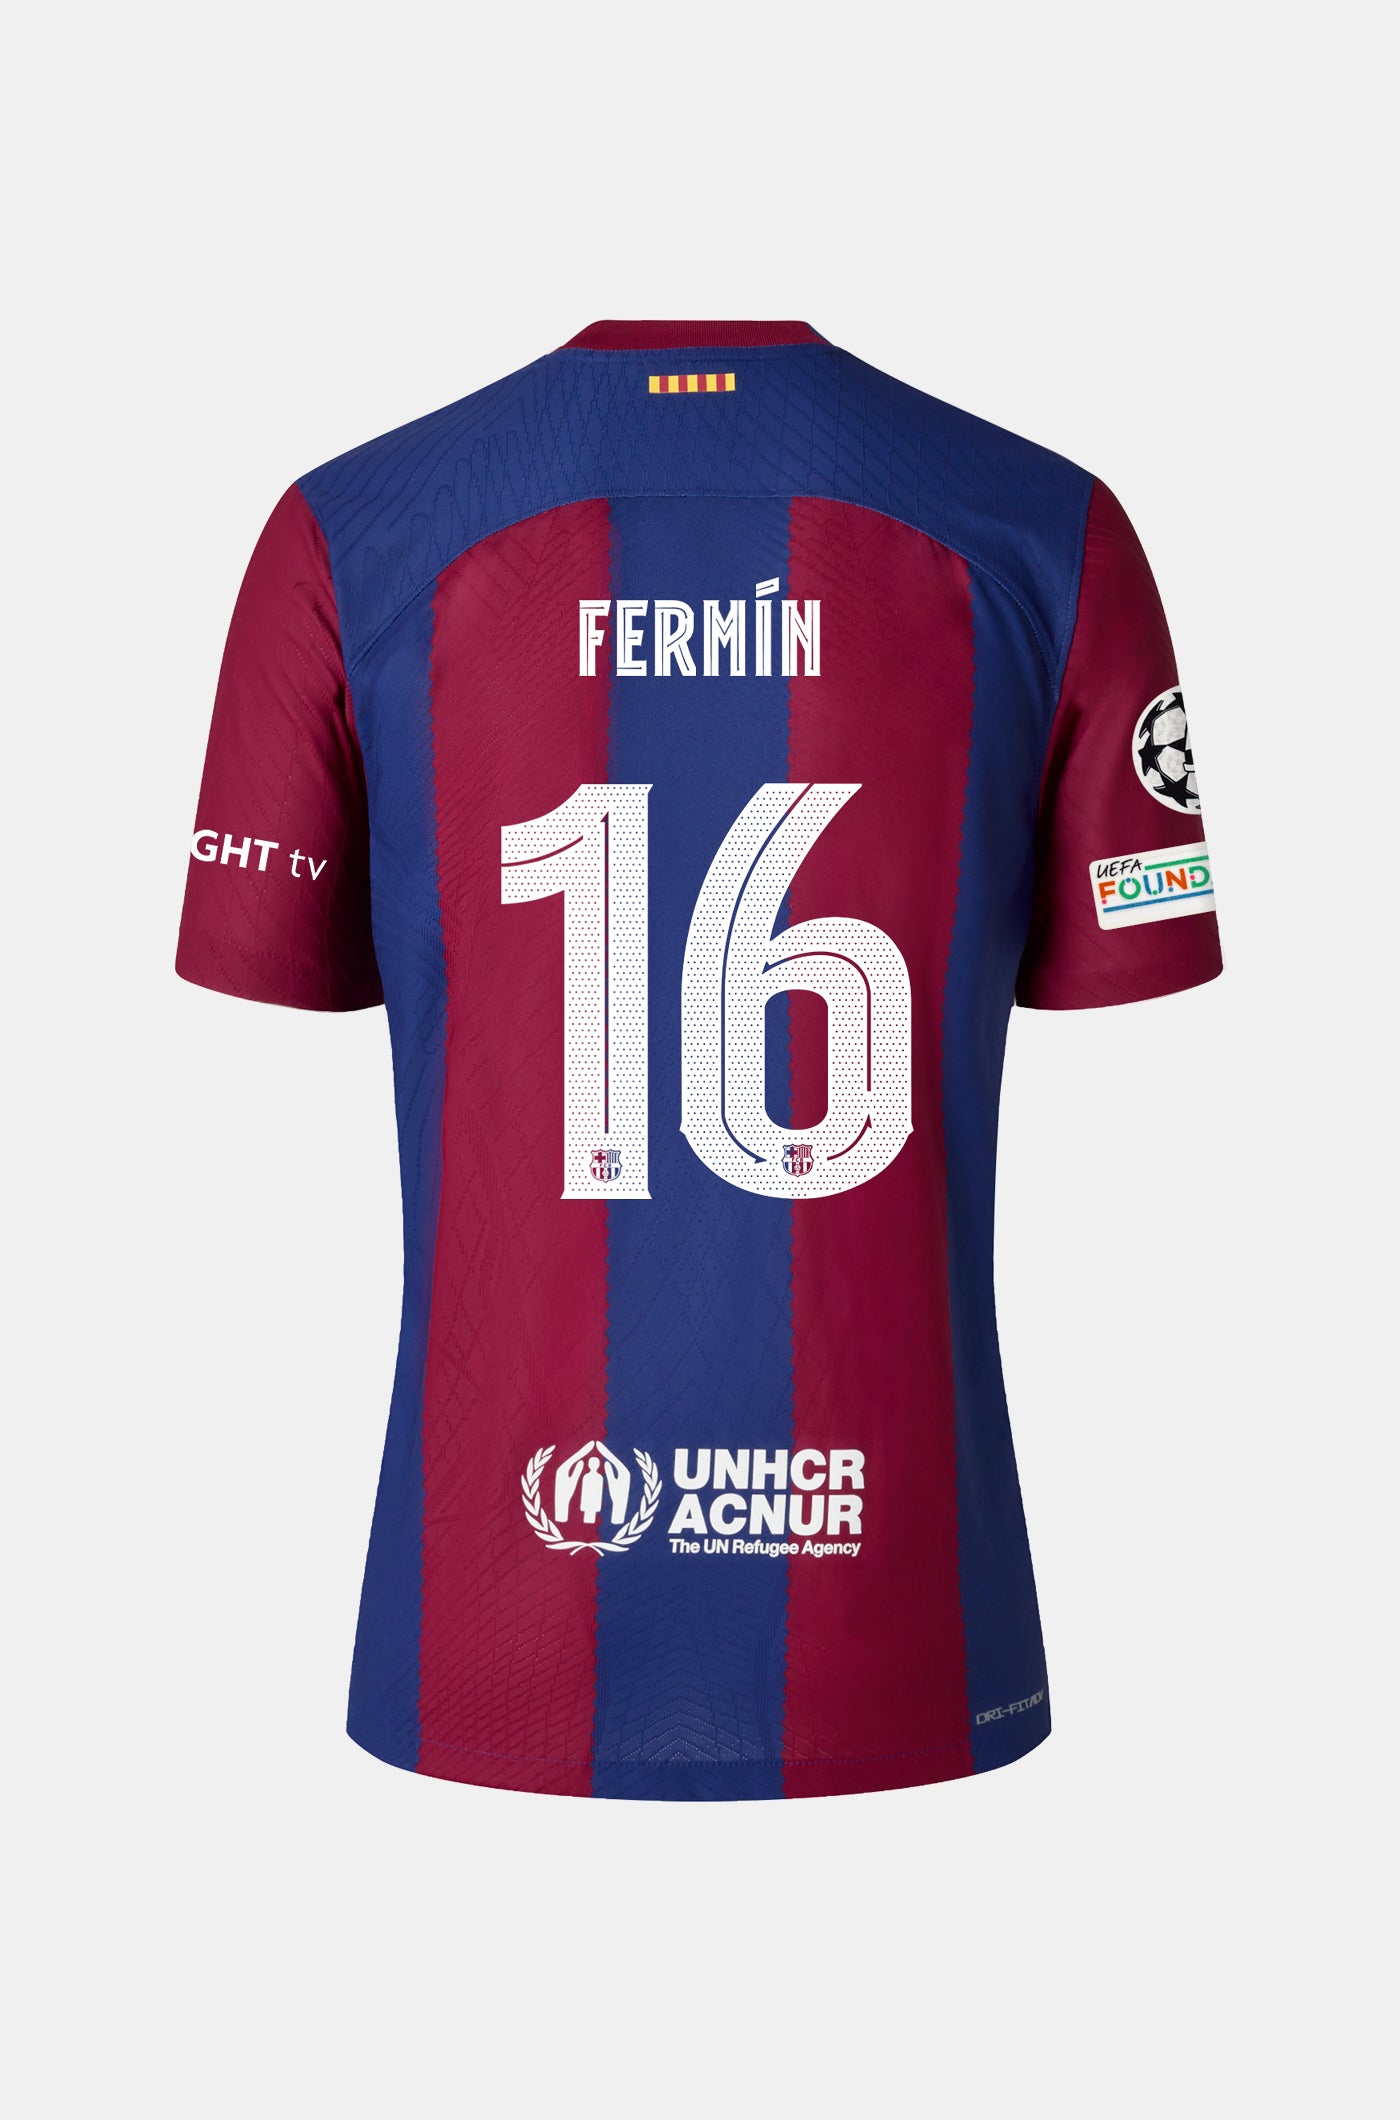 UCL FC Barcelona Home Shirt 23/24 Player's Edition - Women - FERMÍN